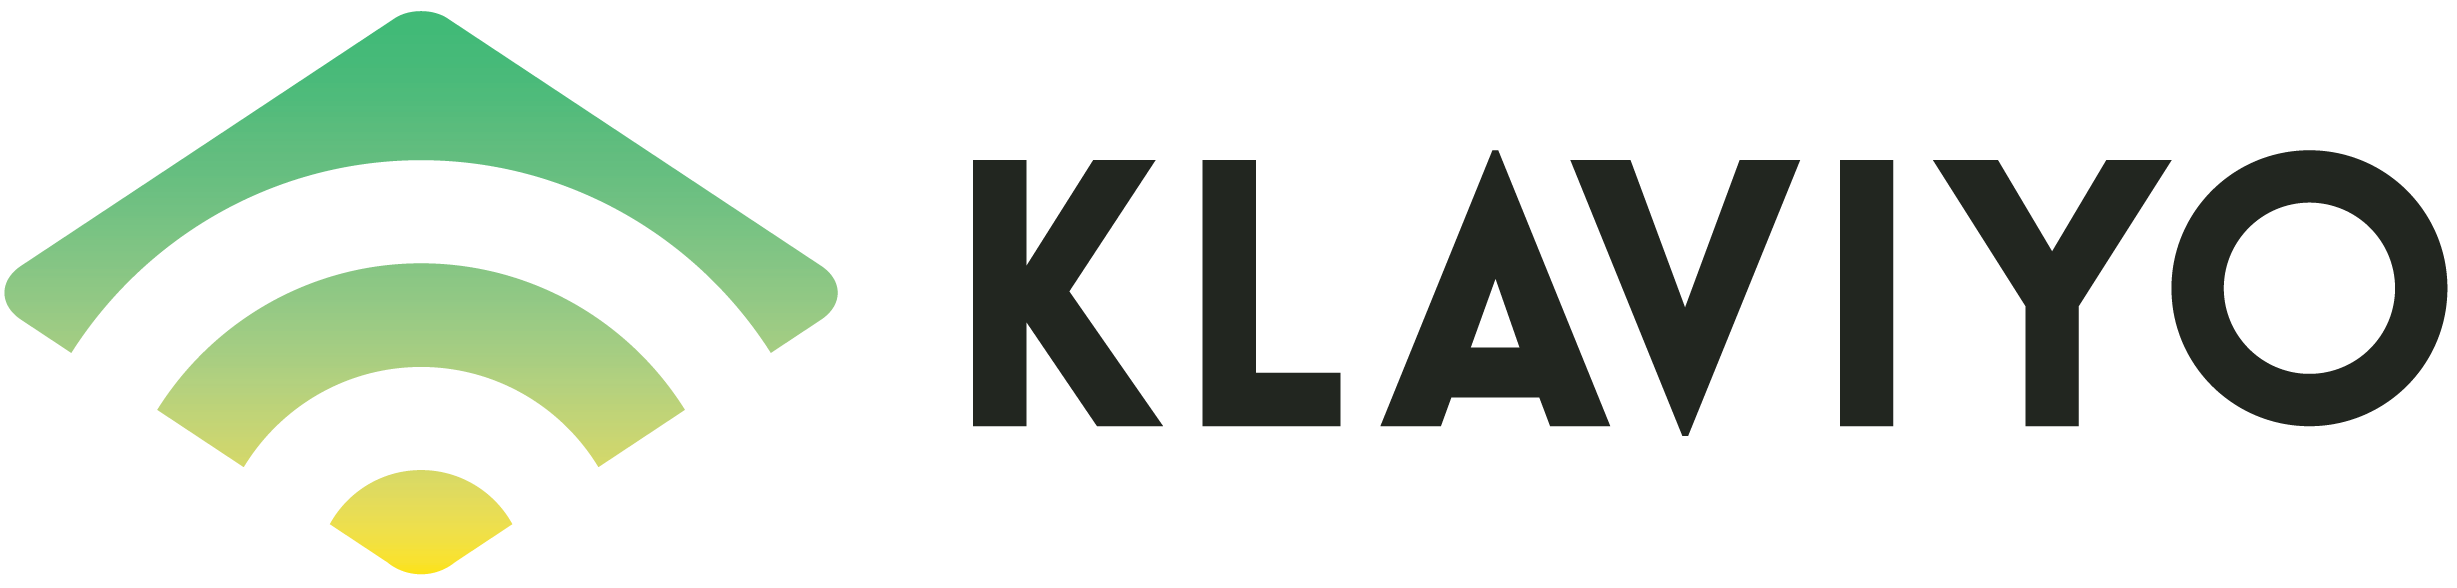 klaviyo-integration-logo